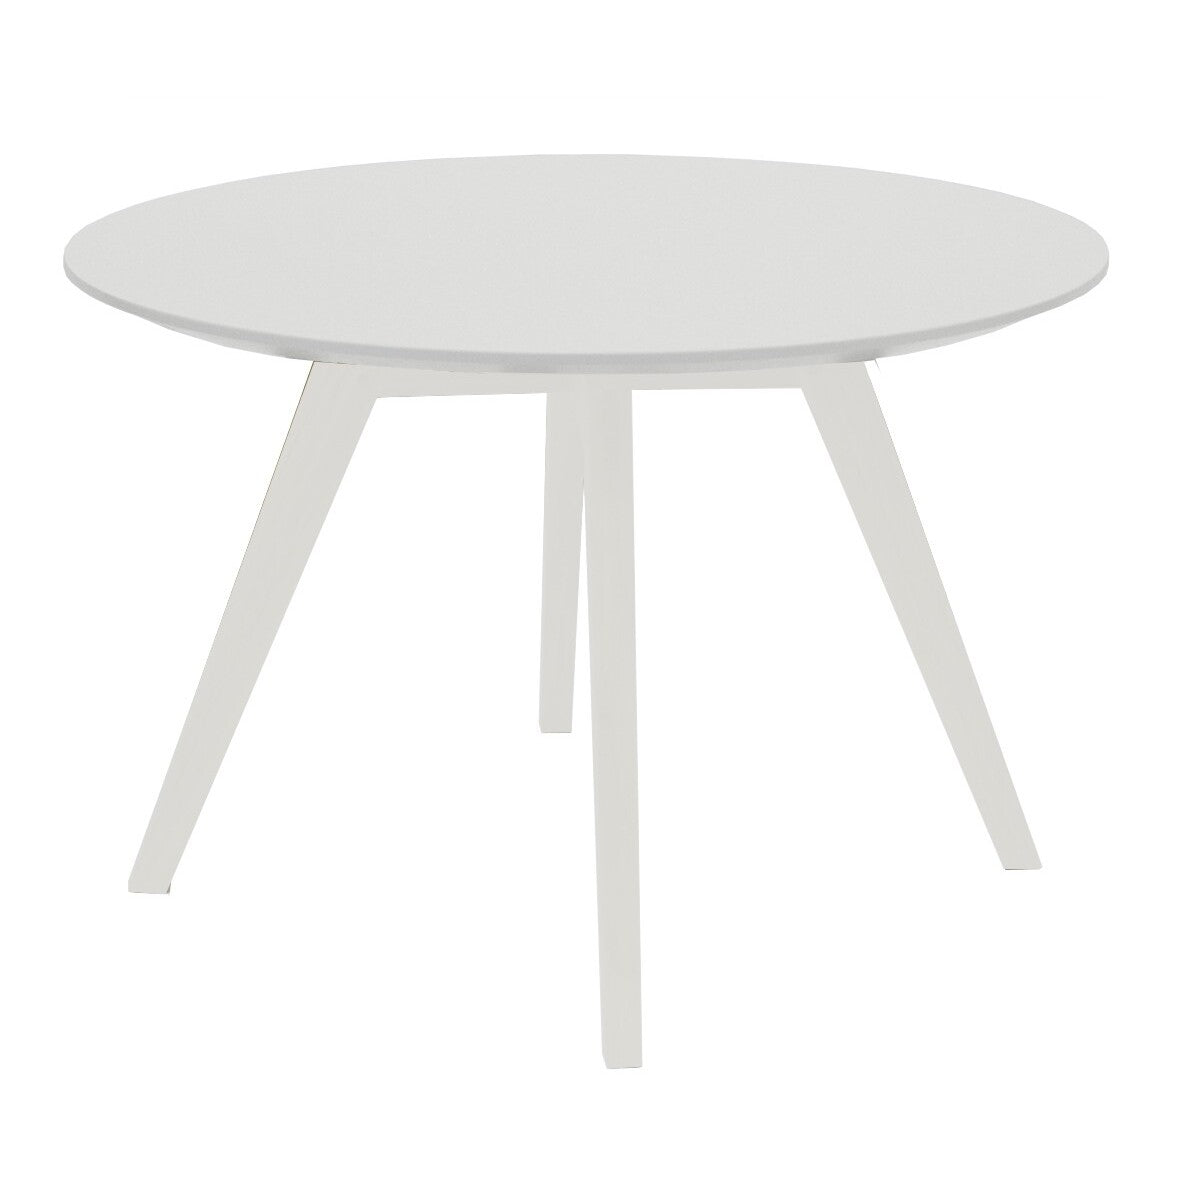 Konferenční stolek Lola Bess - bílá, bílá (9317-001+9366-001)